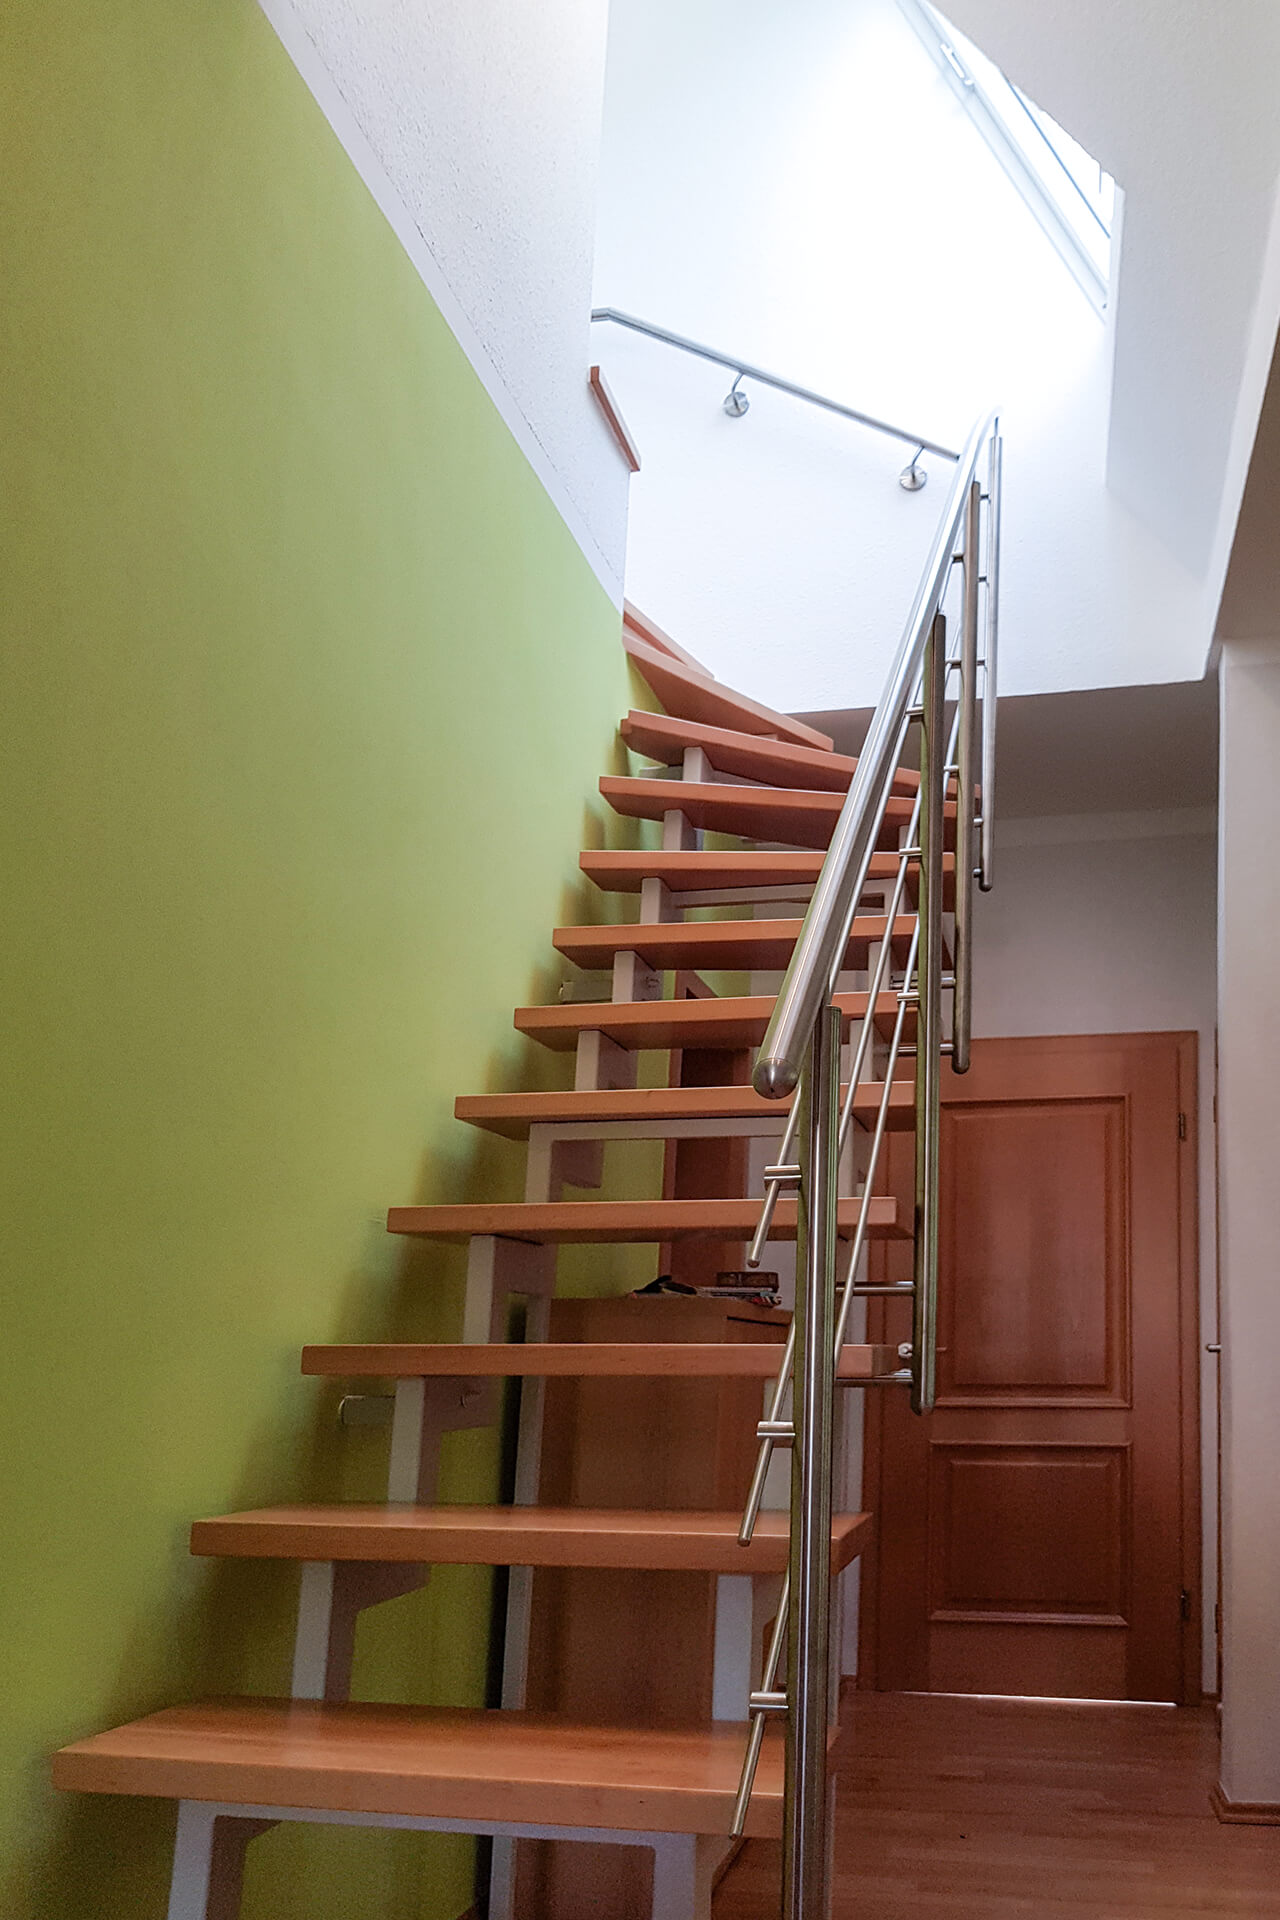 Für ein Mehrfamilienhaus in Mühlheim konzipierte und realisierte die Edelstahlschlosserei Nappenfeld aus Mülheim eine neue, fünfzehnstufige Treppe aus edlem Holz